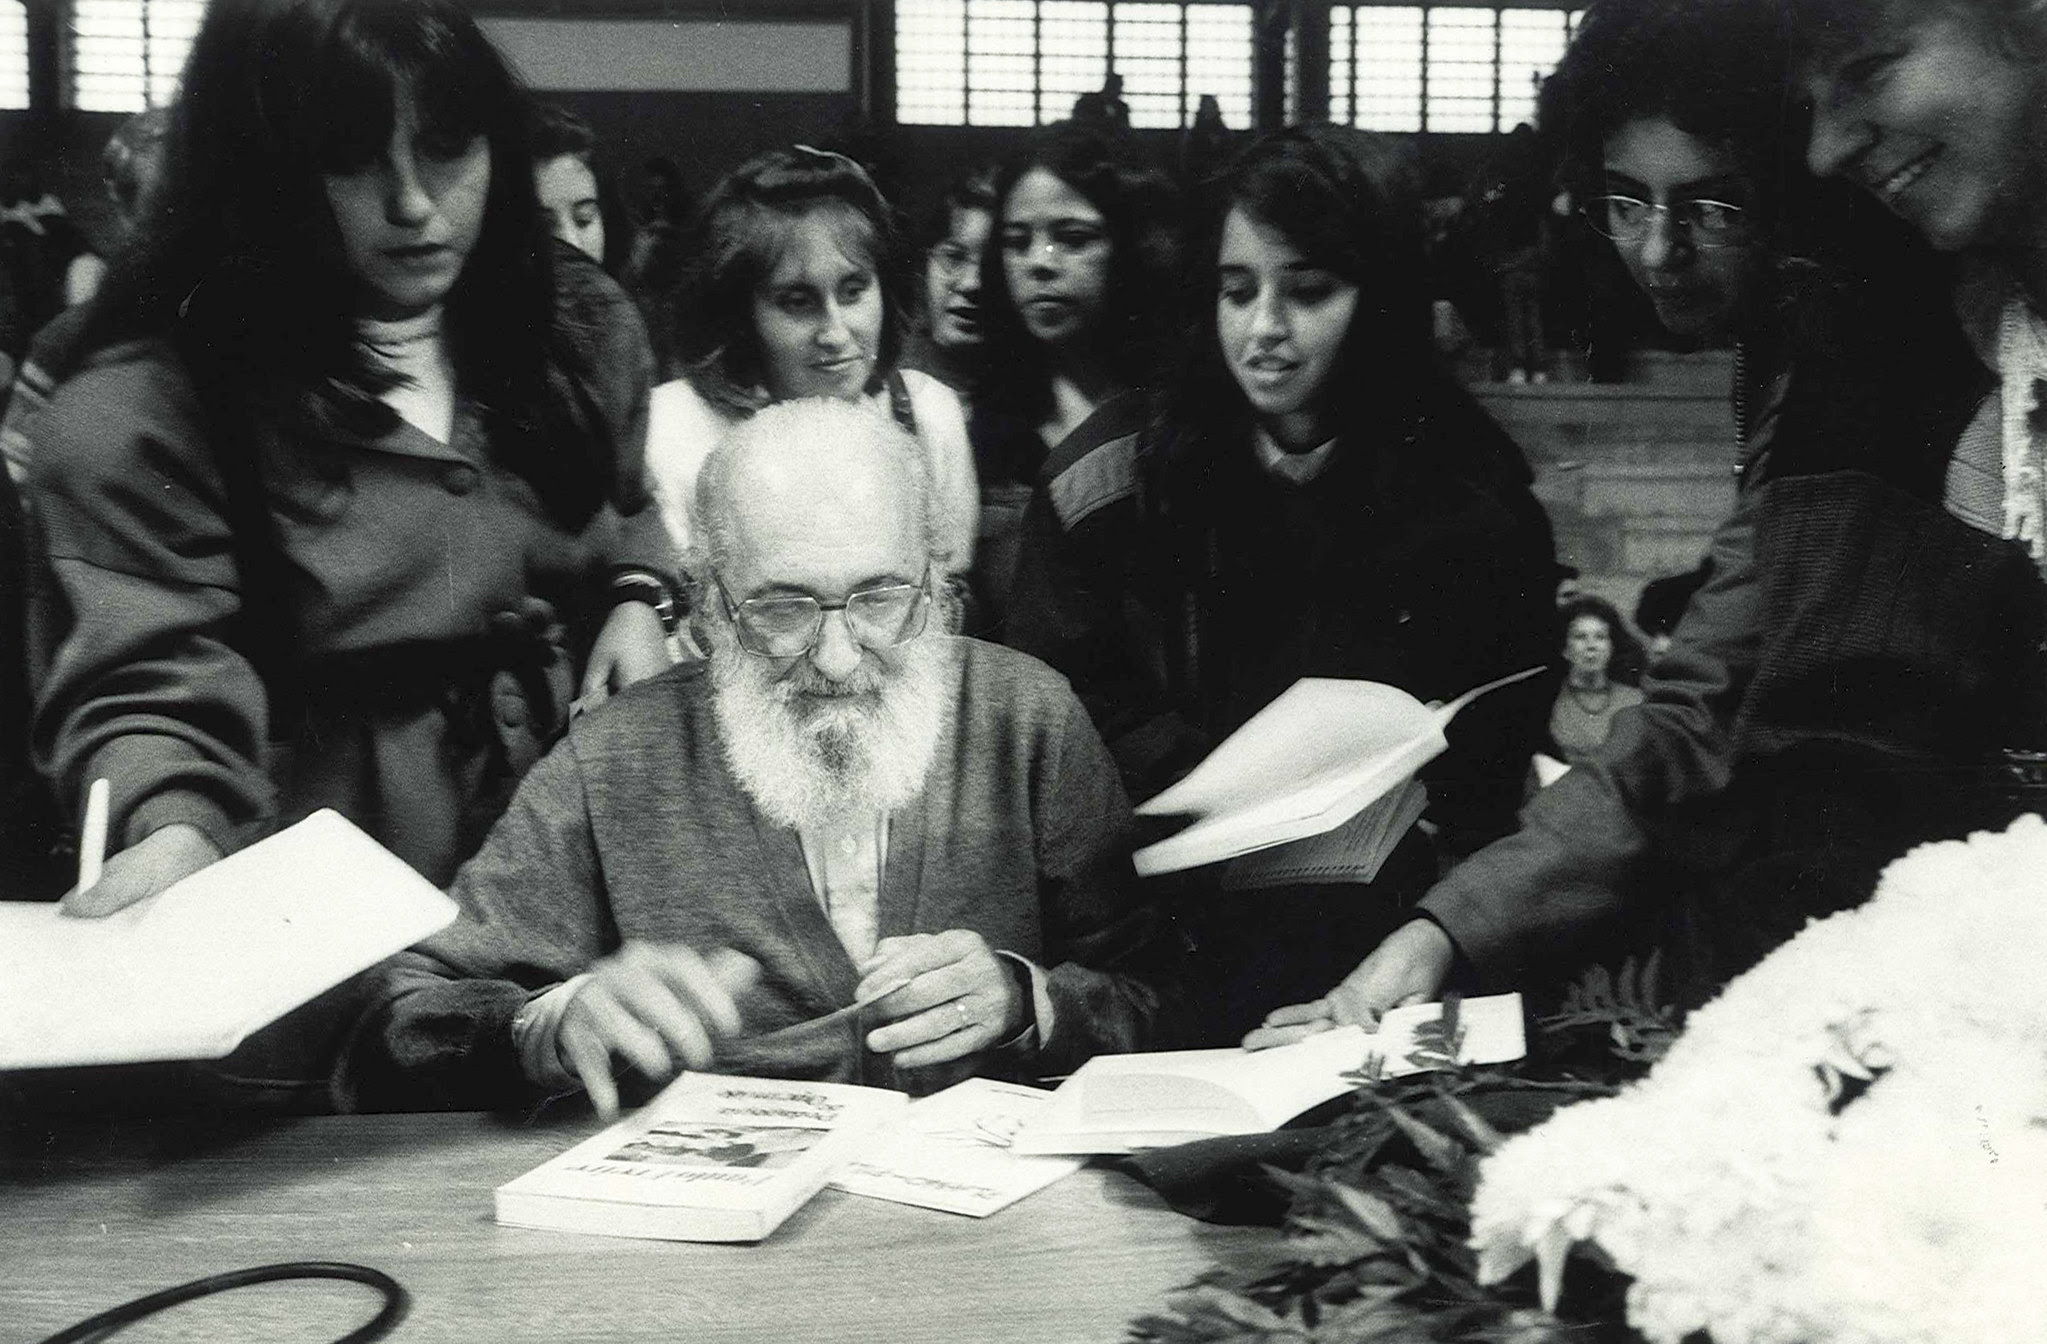 Três ideias de Freire são consideradas fundamentais: a educação não pode ser neutra, a educação é transformadora e a educação tem compromisso com a democracia